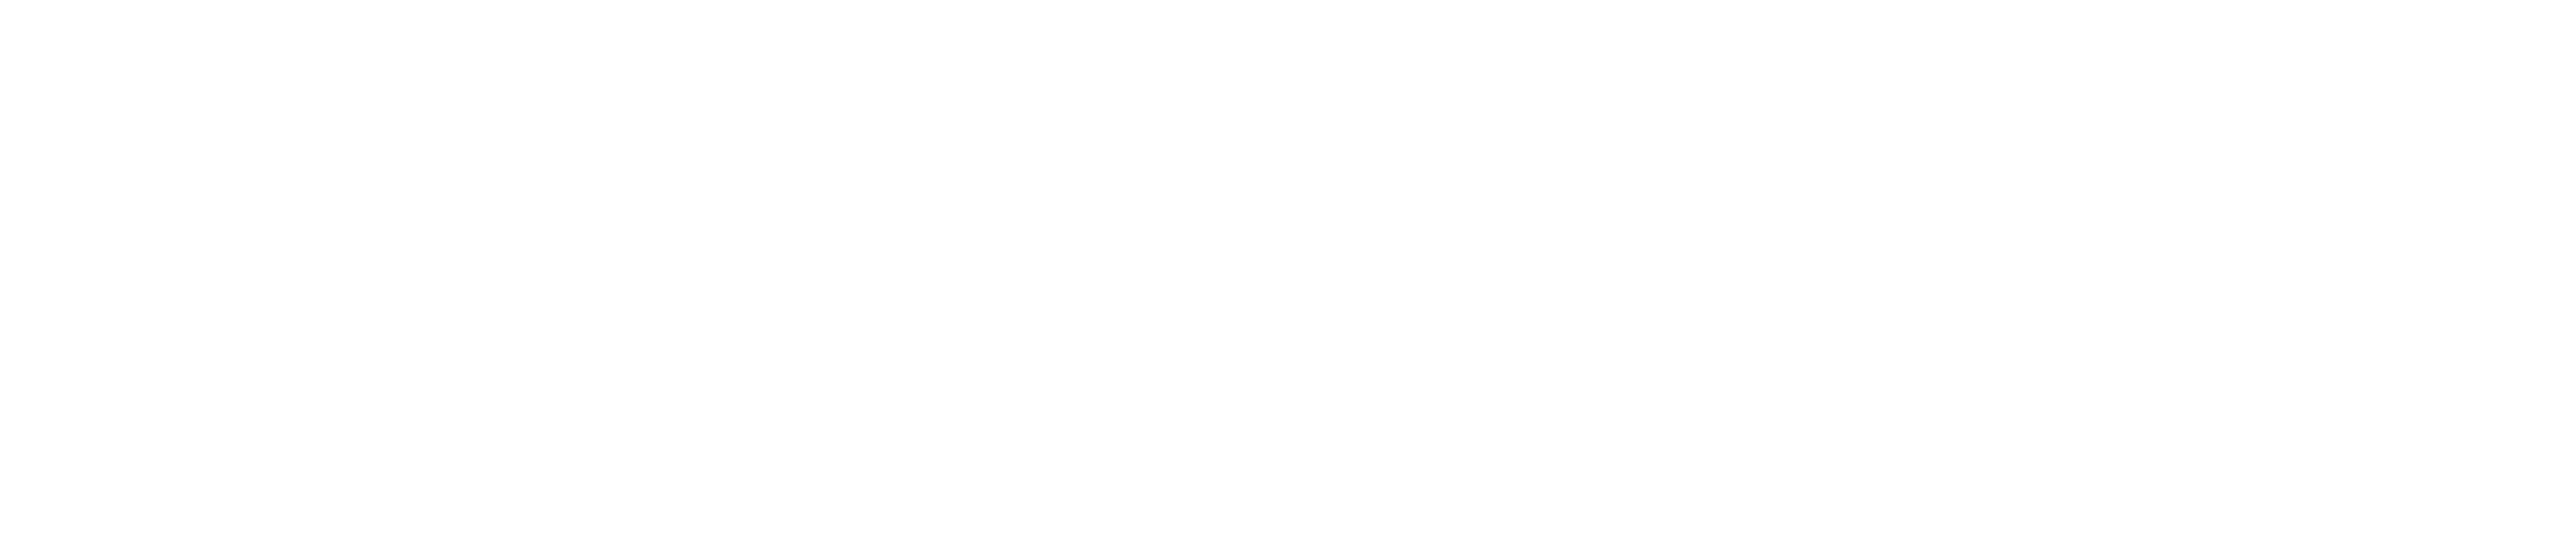 united developers white logo